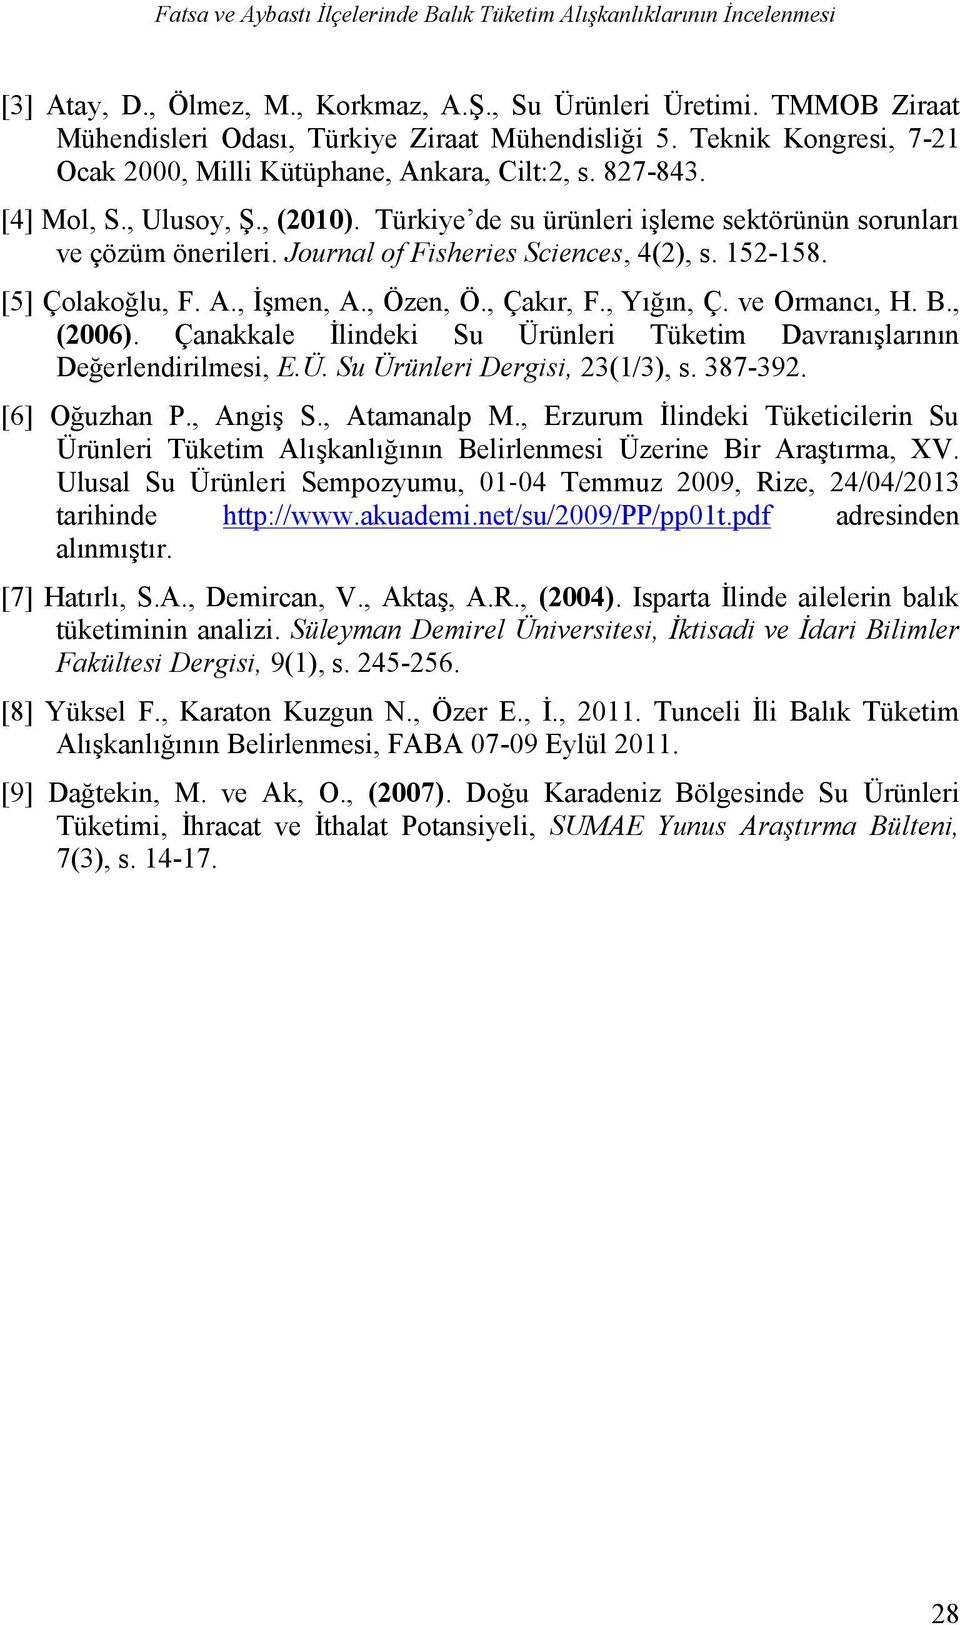 Journal of Fisheries Sciences, 4(2), s. 152-158. [5] Çolakoğlu, F. A., İşmen, A., Özen, Ö., Çakır, F., Yığın, Ç. ve Ormancı, H. B., (2006).